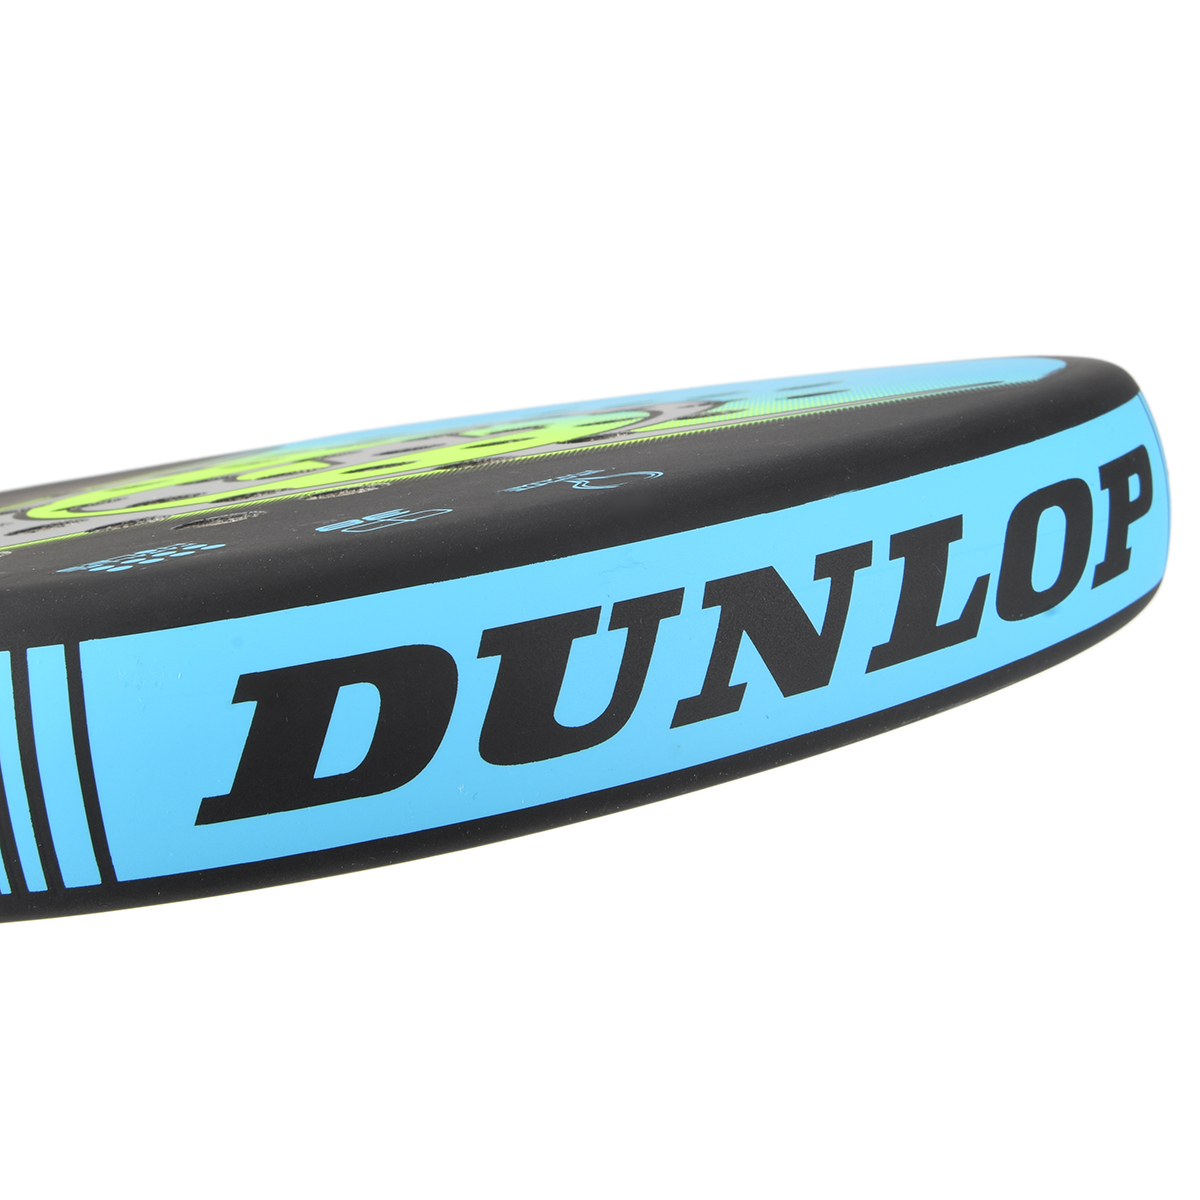 Paleta Dunlop Rapid 3.0,  image number null